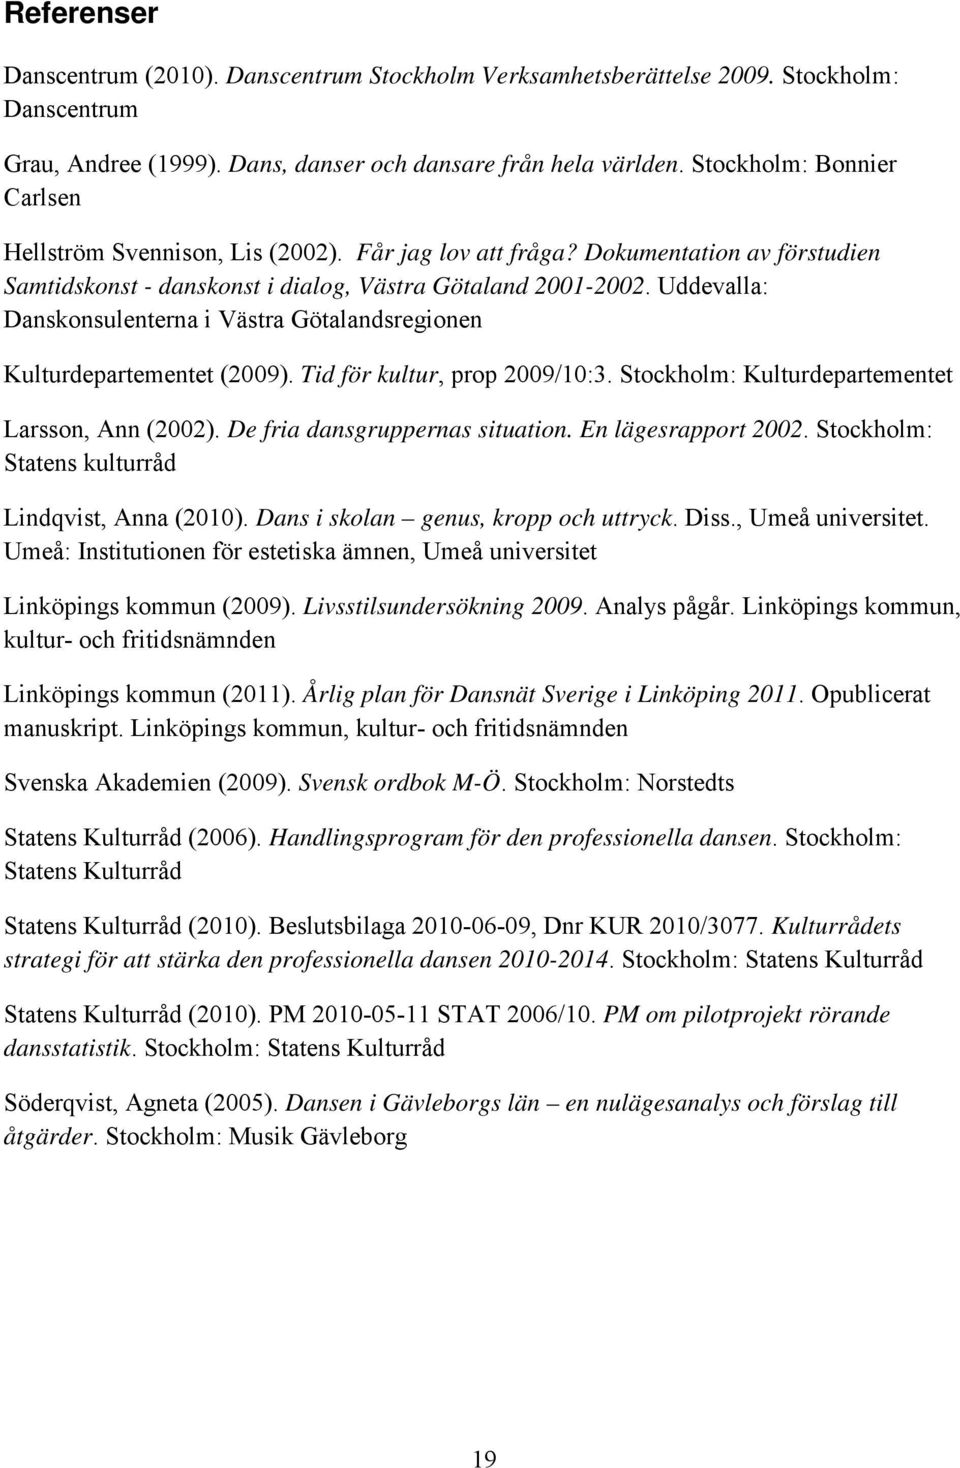 Uddevalla: Danskonsulenterna i Västra Götalandsregionen Kulturdepartementet (2009). Tid för kultur, prop 2009/10:3. Stockholm: Kulturdepartementet Larsson, Ann (2002).